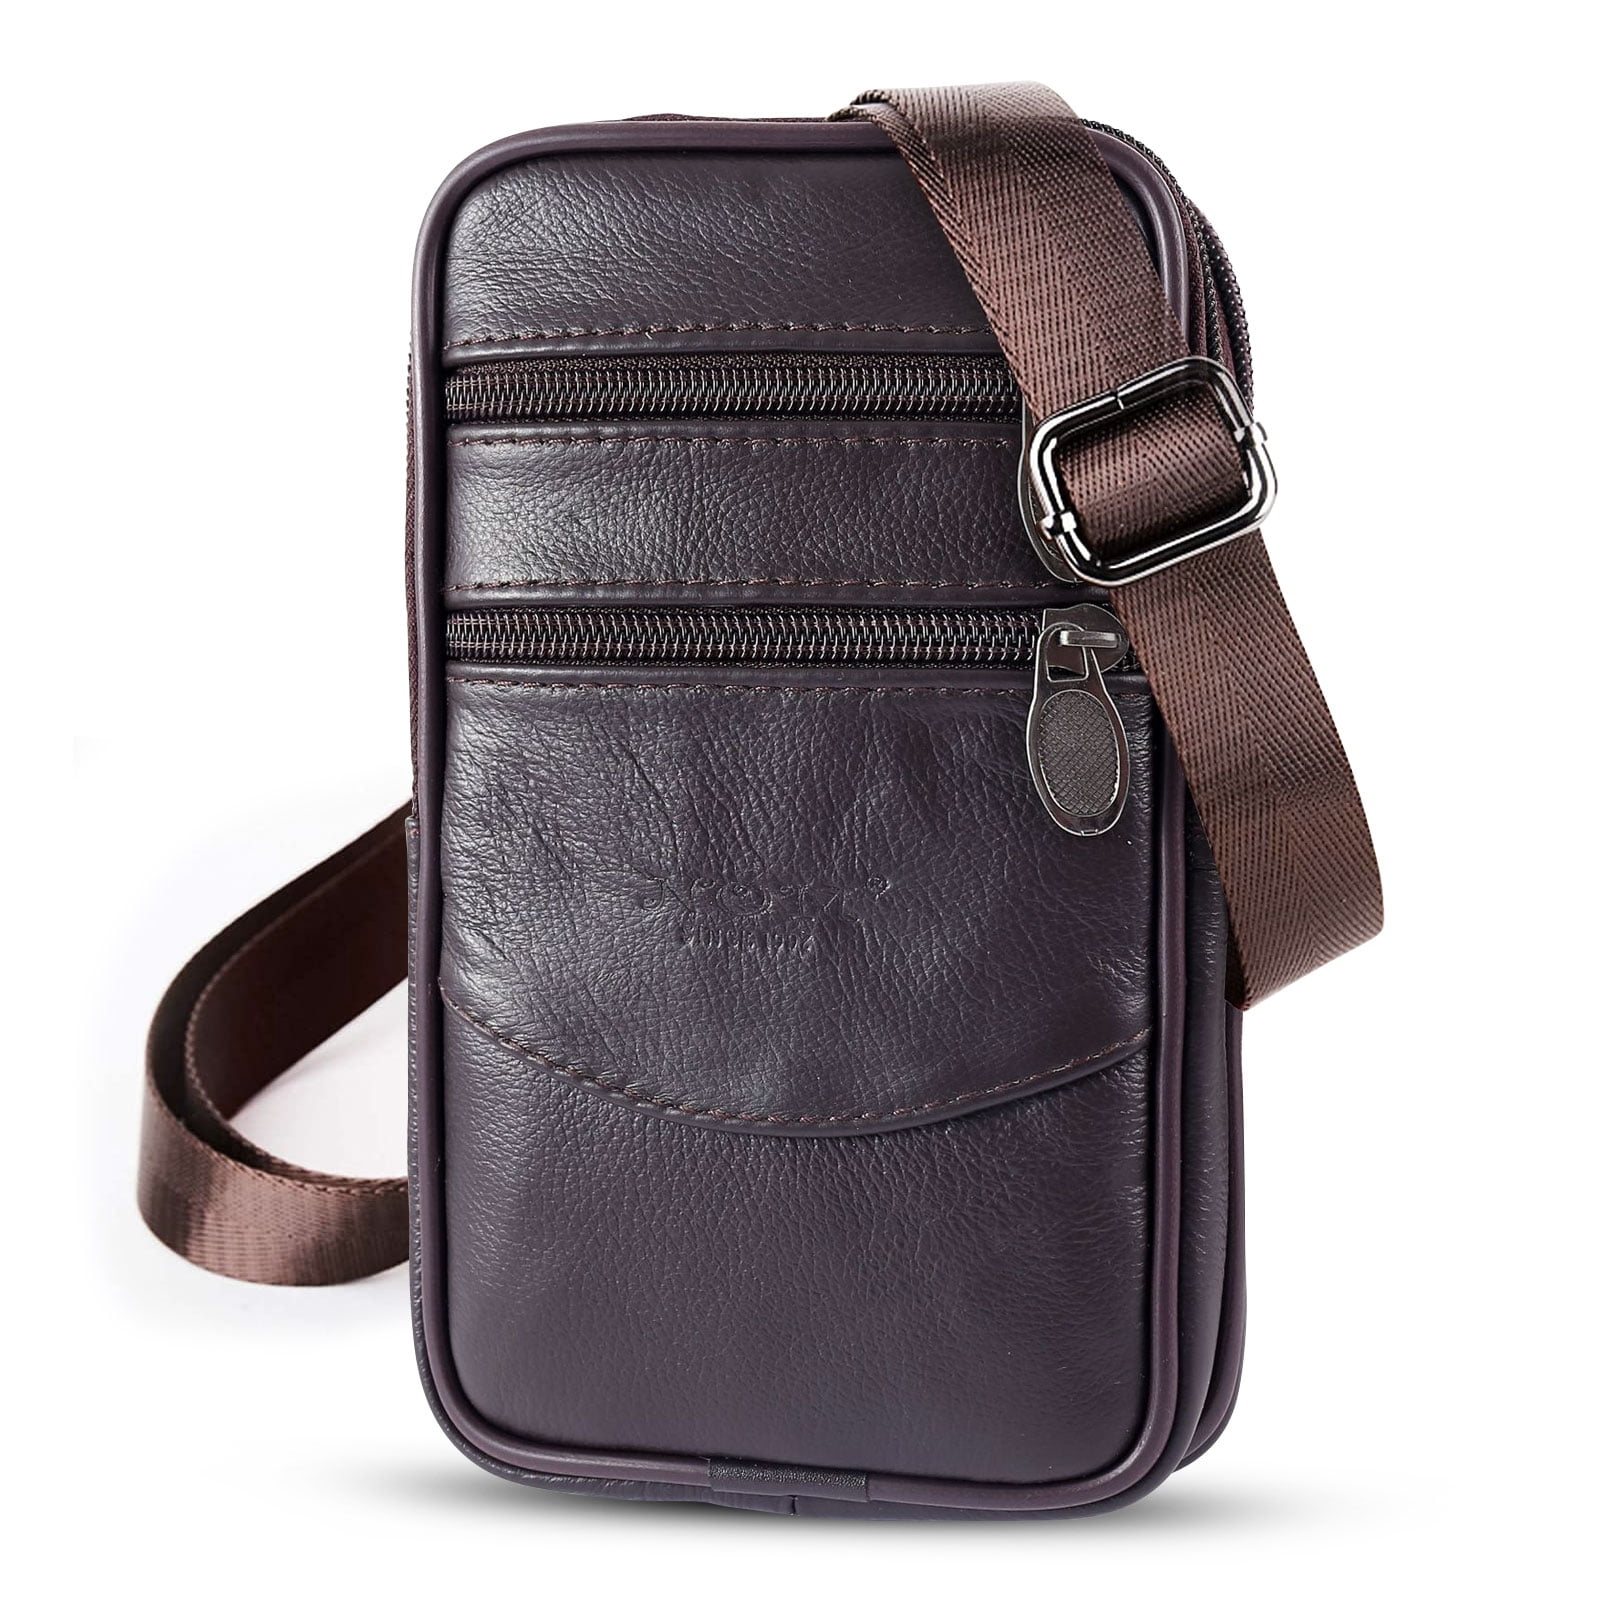 Handbag Business Messenger Bag Holster Case Belt Pouch for iPad Mobile Phone Mens Leather Work Travel Shoulder Messenger Bag 